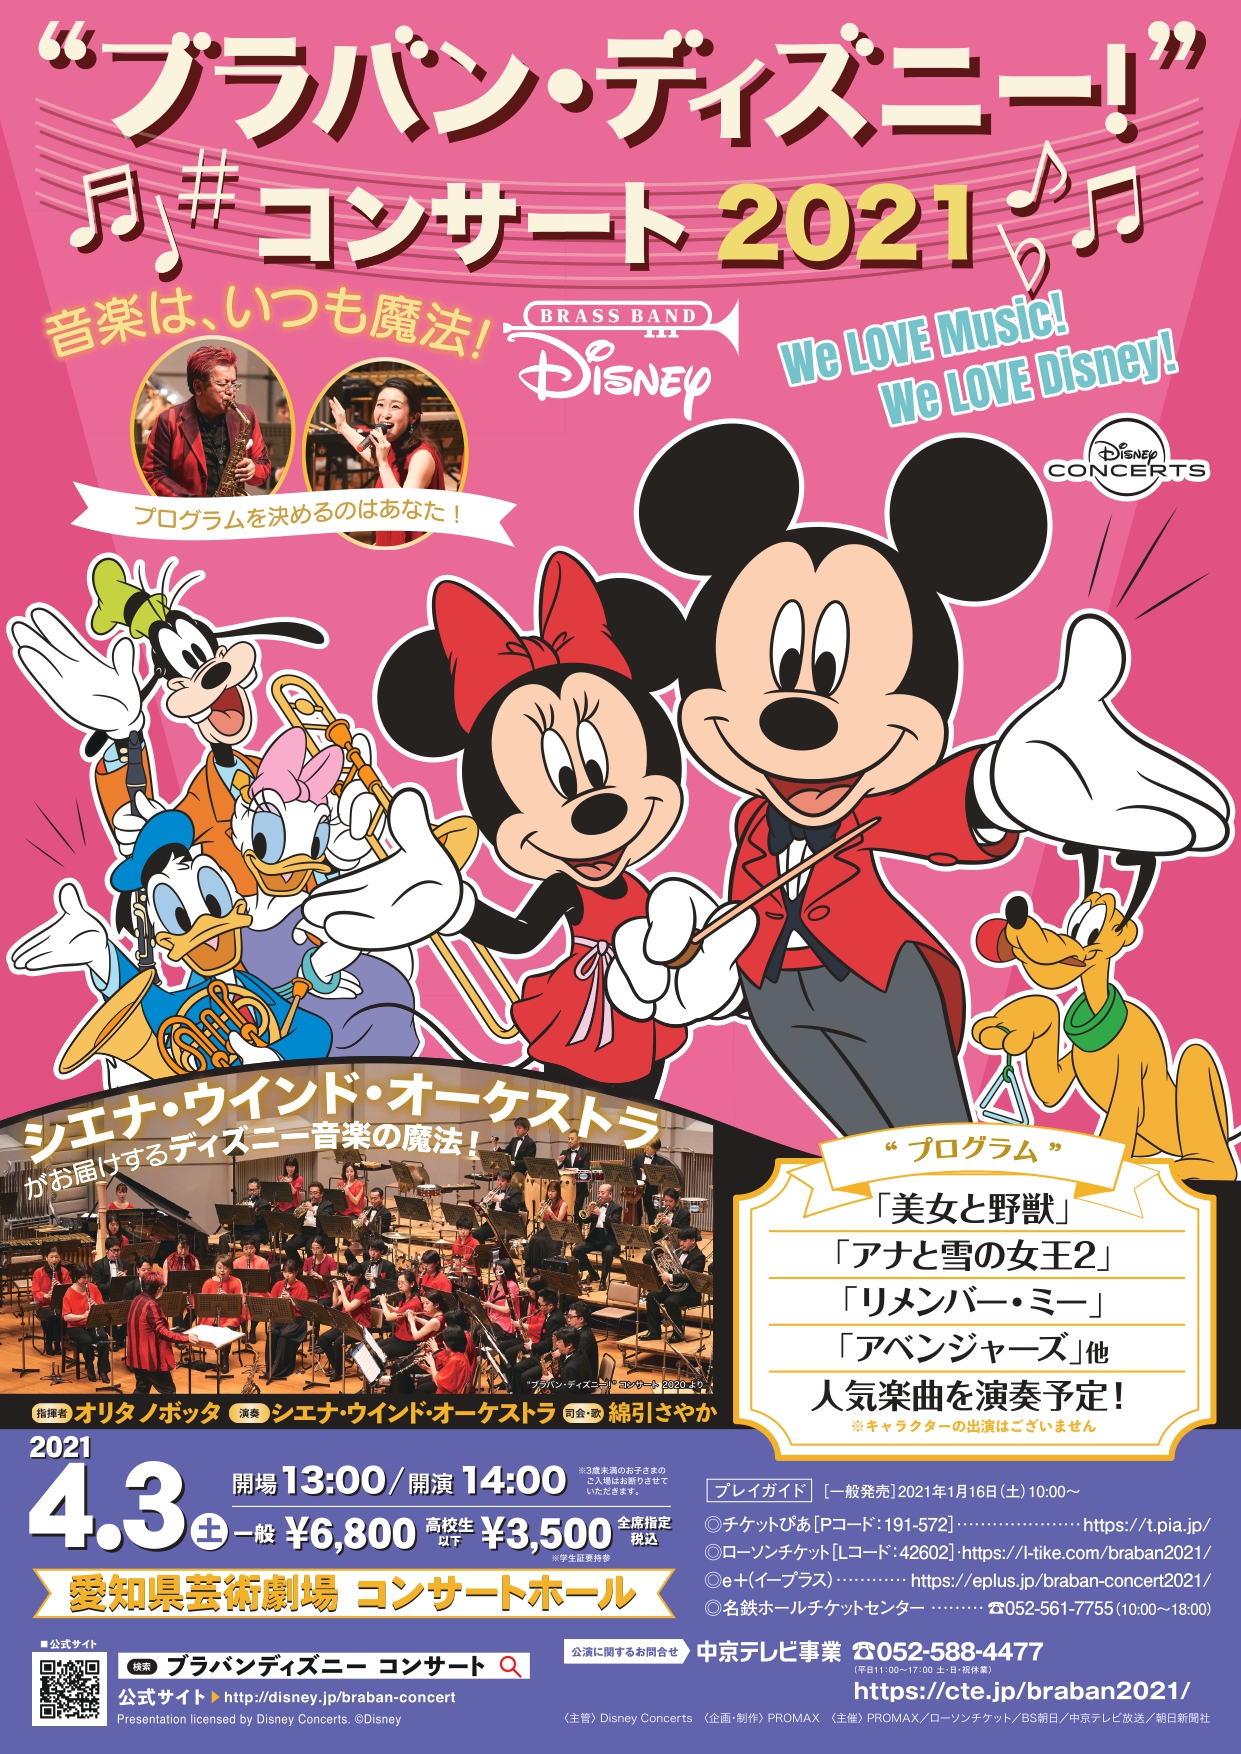 中京テレビクリエイション Ticket Online ブラバン ディズニー コンサート 21